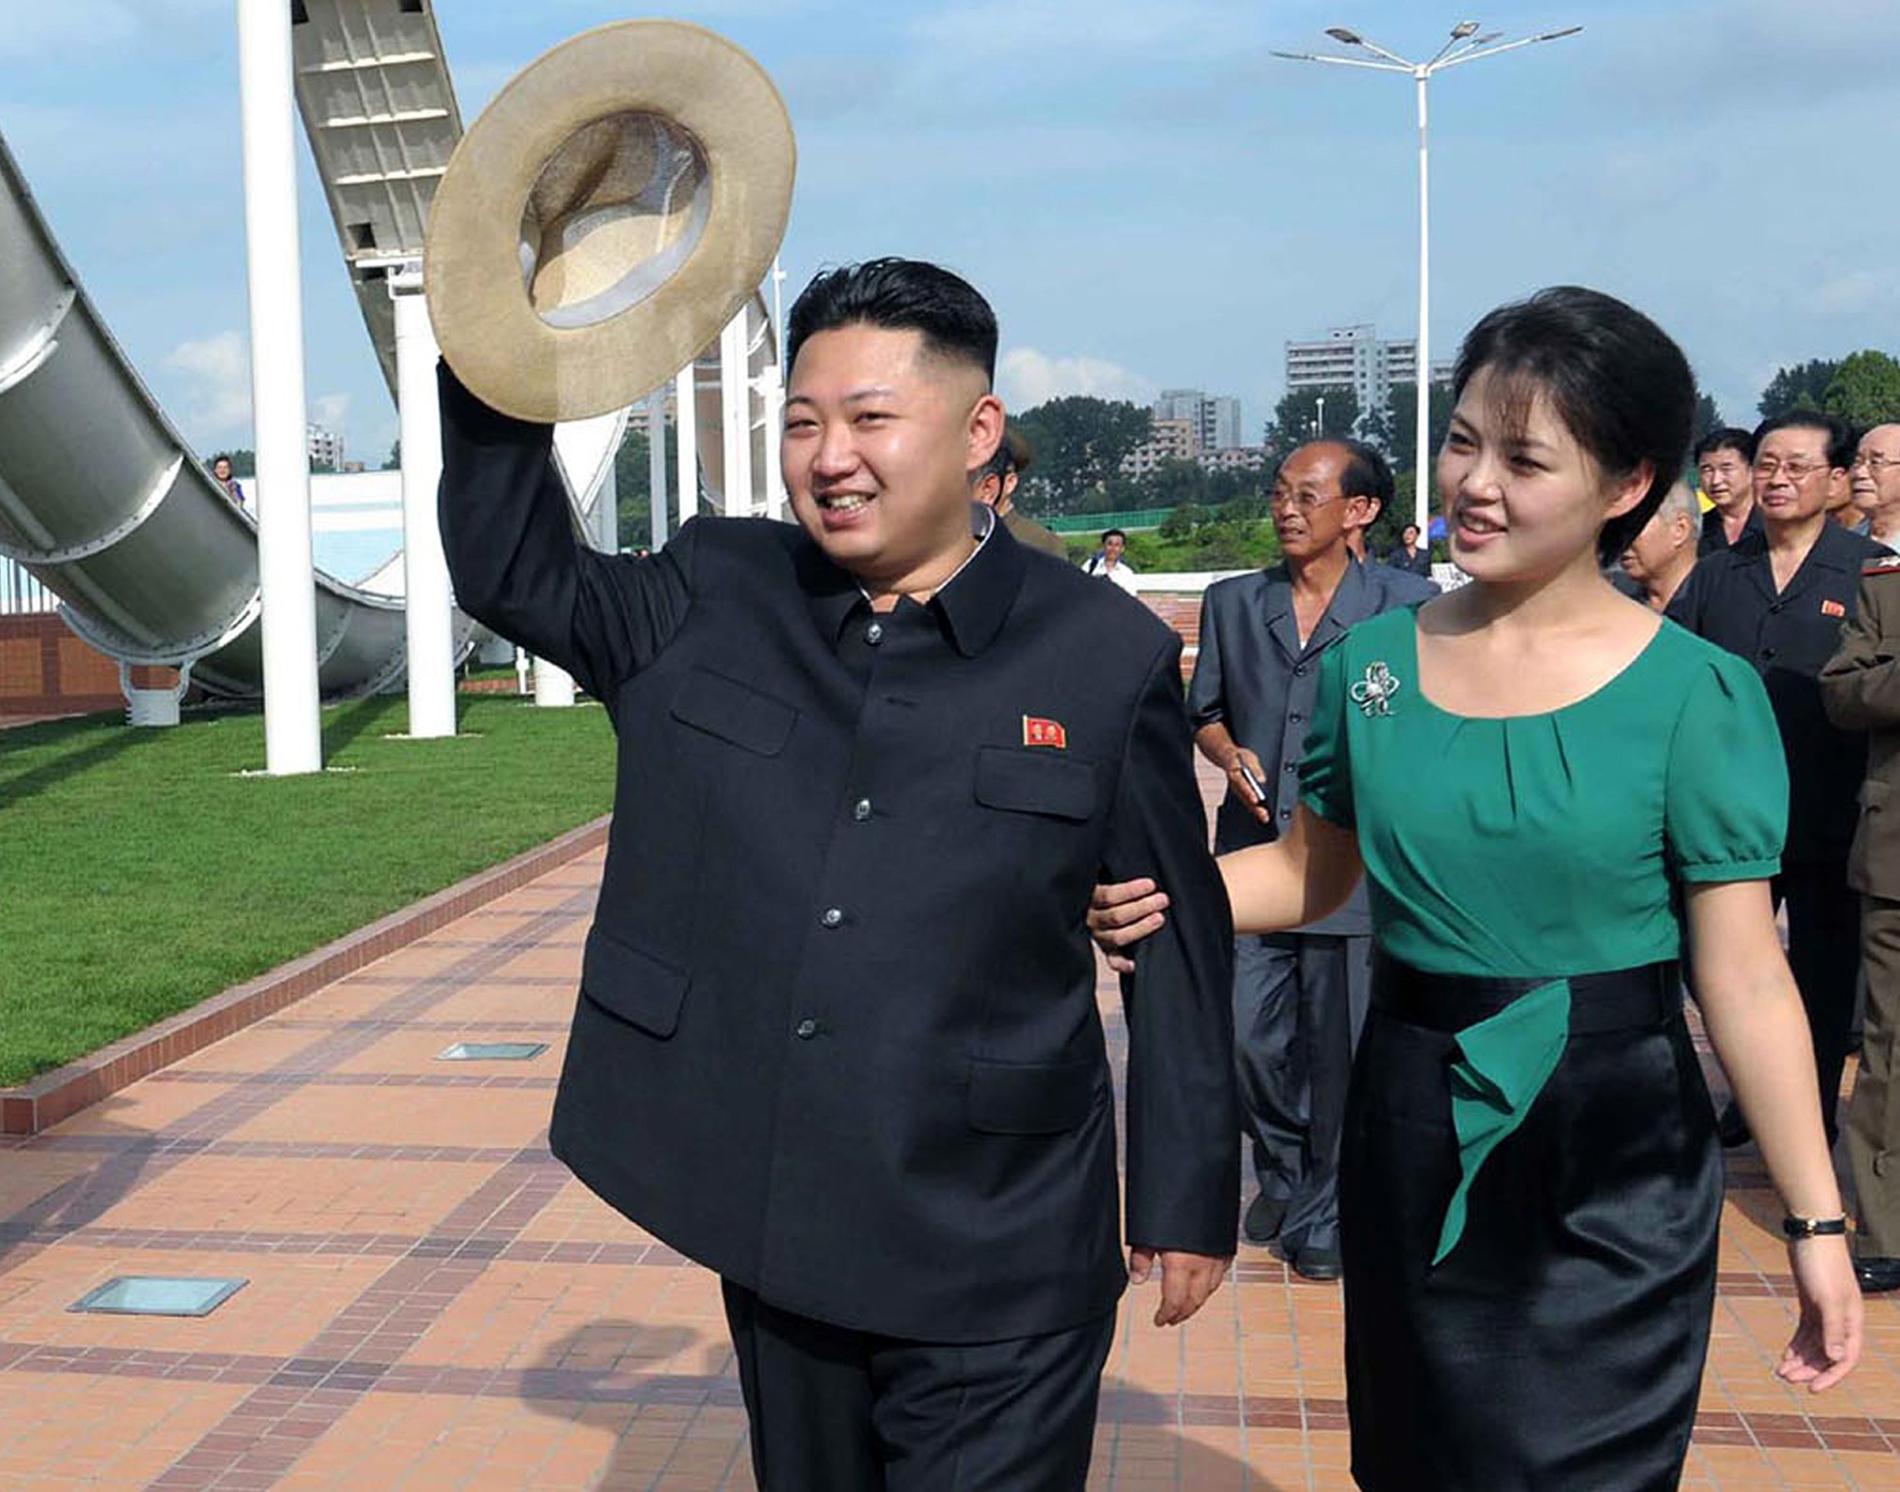 Kim och hans fru på en lekplats i Nordkoreas huvudstad Pyongyang 2012.